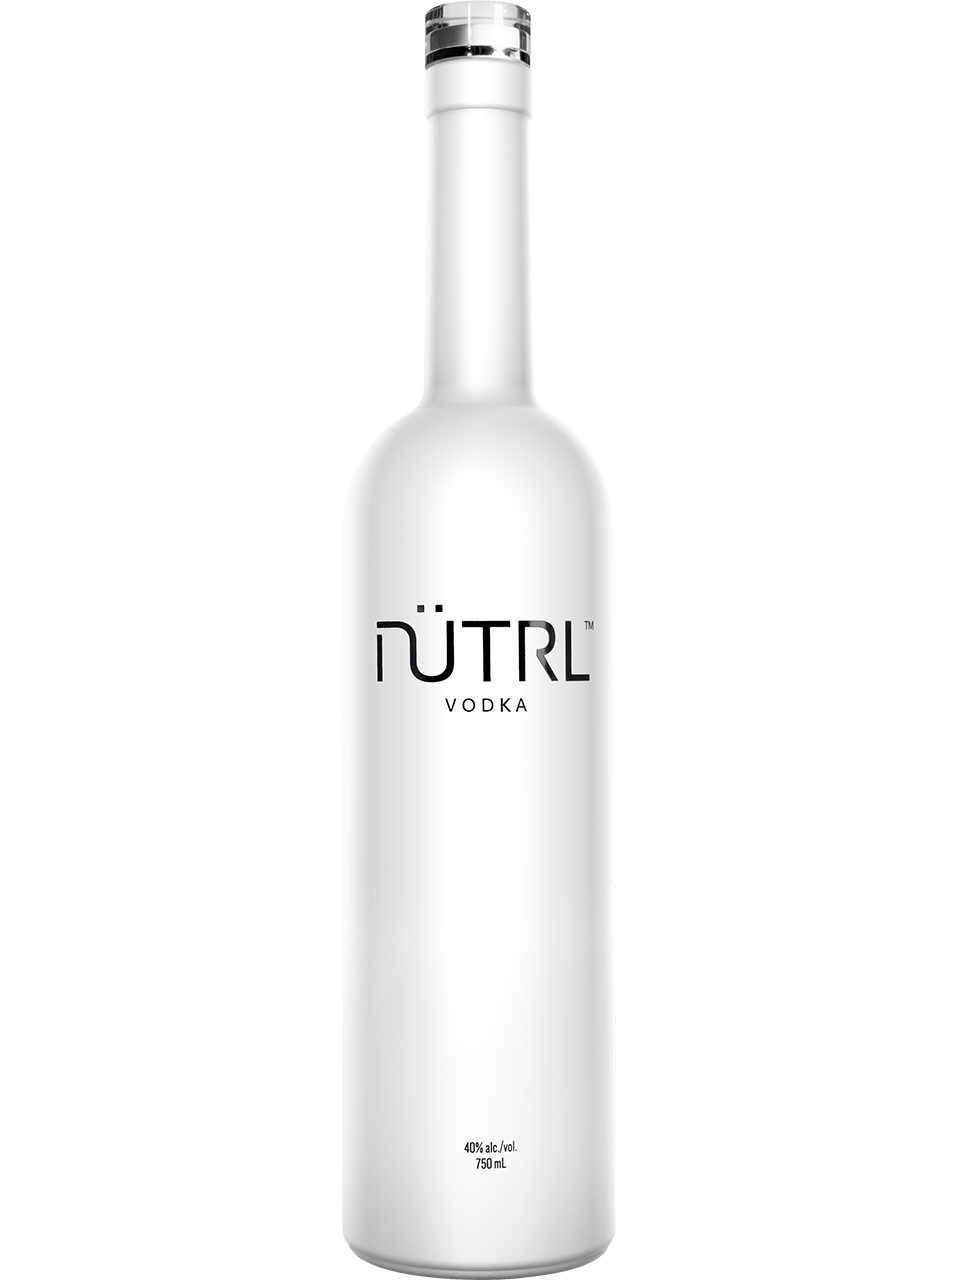 NUTRL Vodka